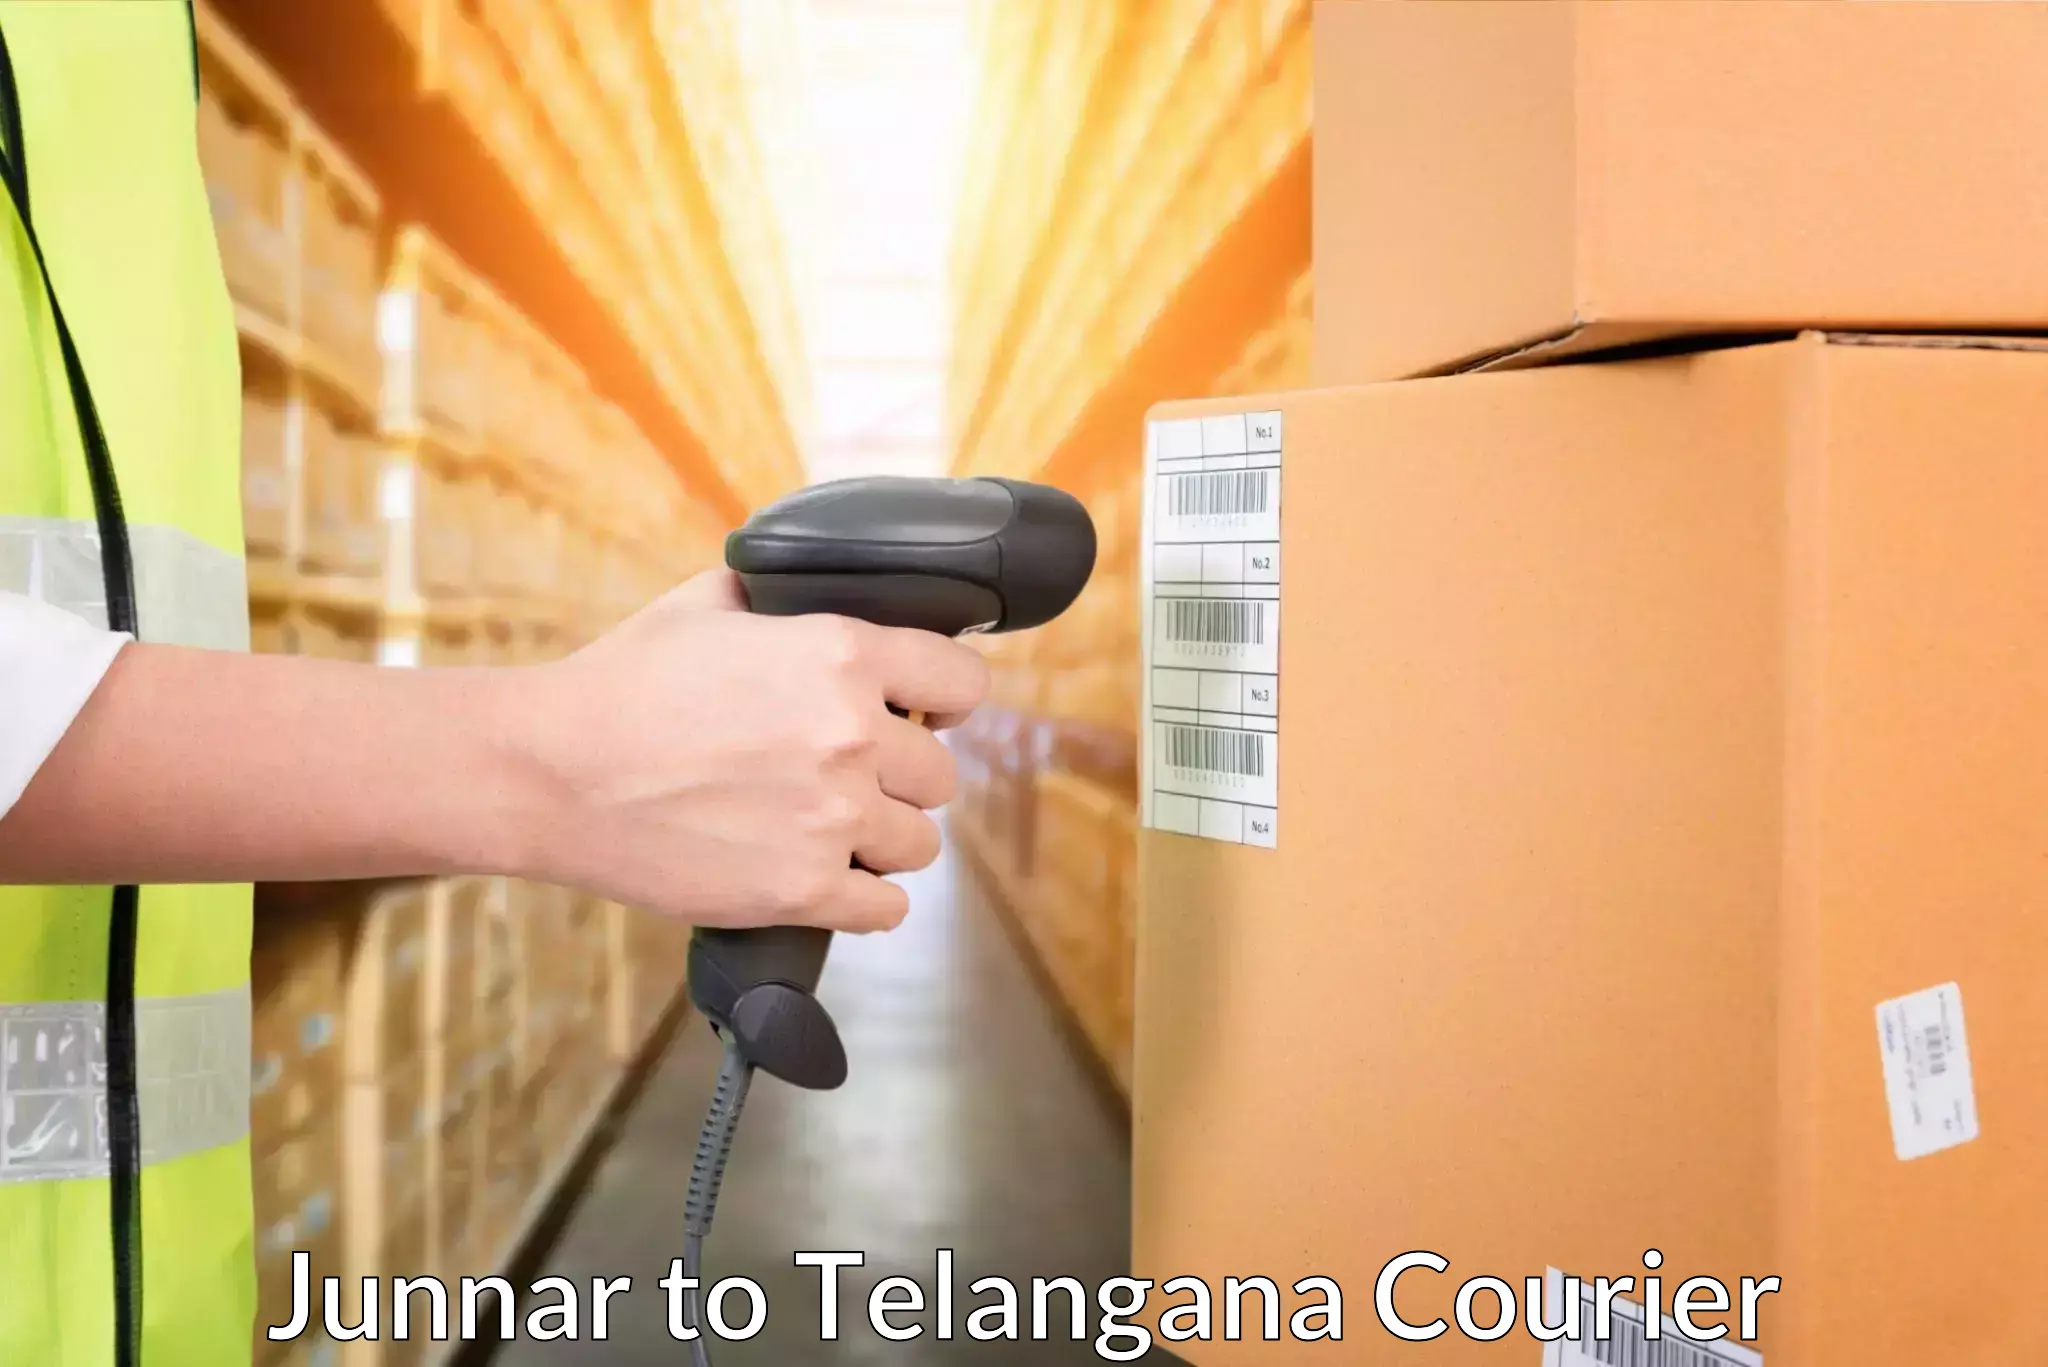 International parcel service Junnar to Veenavanka